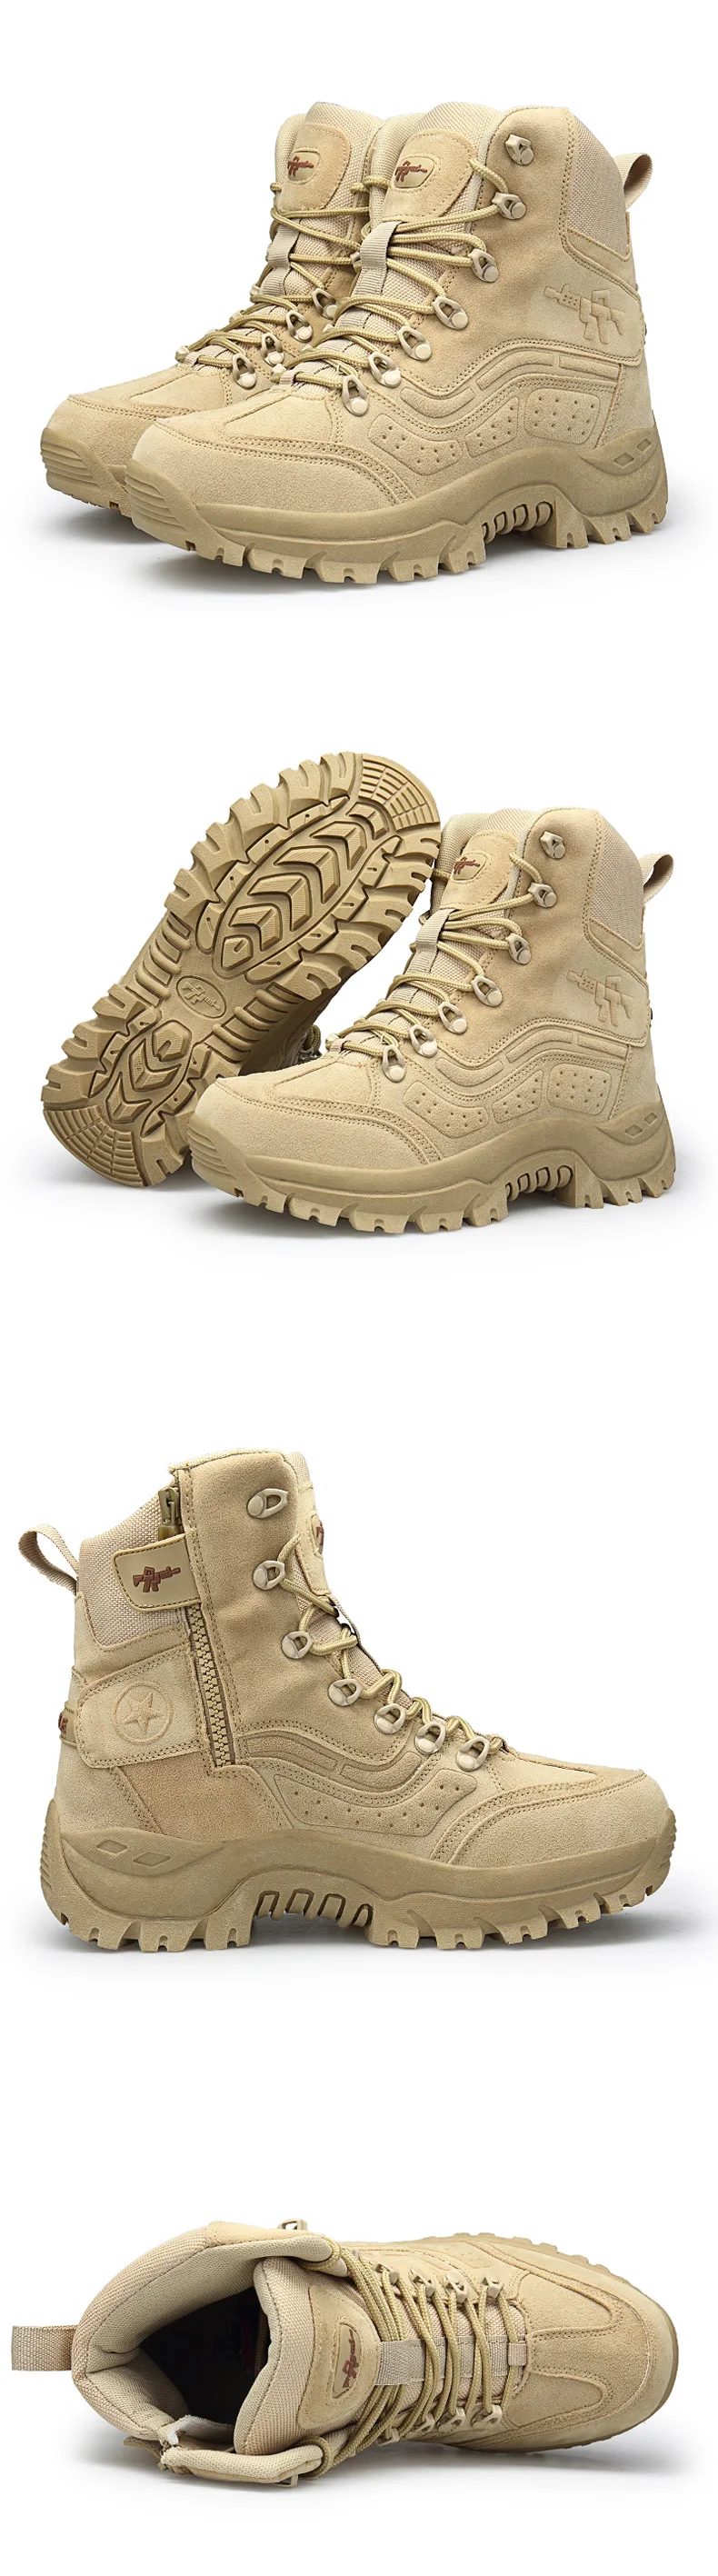 YITU мужские военные тактические ботинки для пустыни, мужские уличные водонепроницаемые походные ботинки, кожаные кроссовки, спортивная обувь для альпинизма, кемпинга